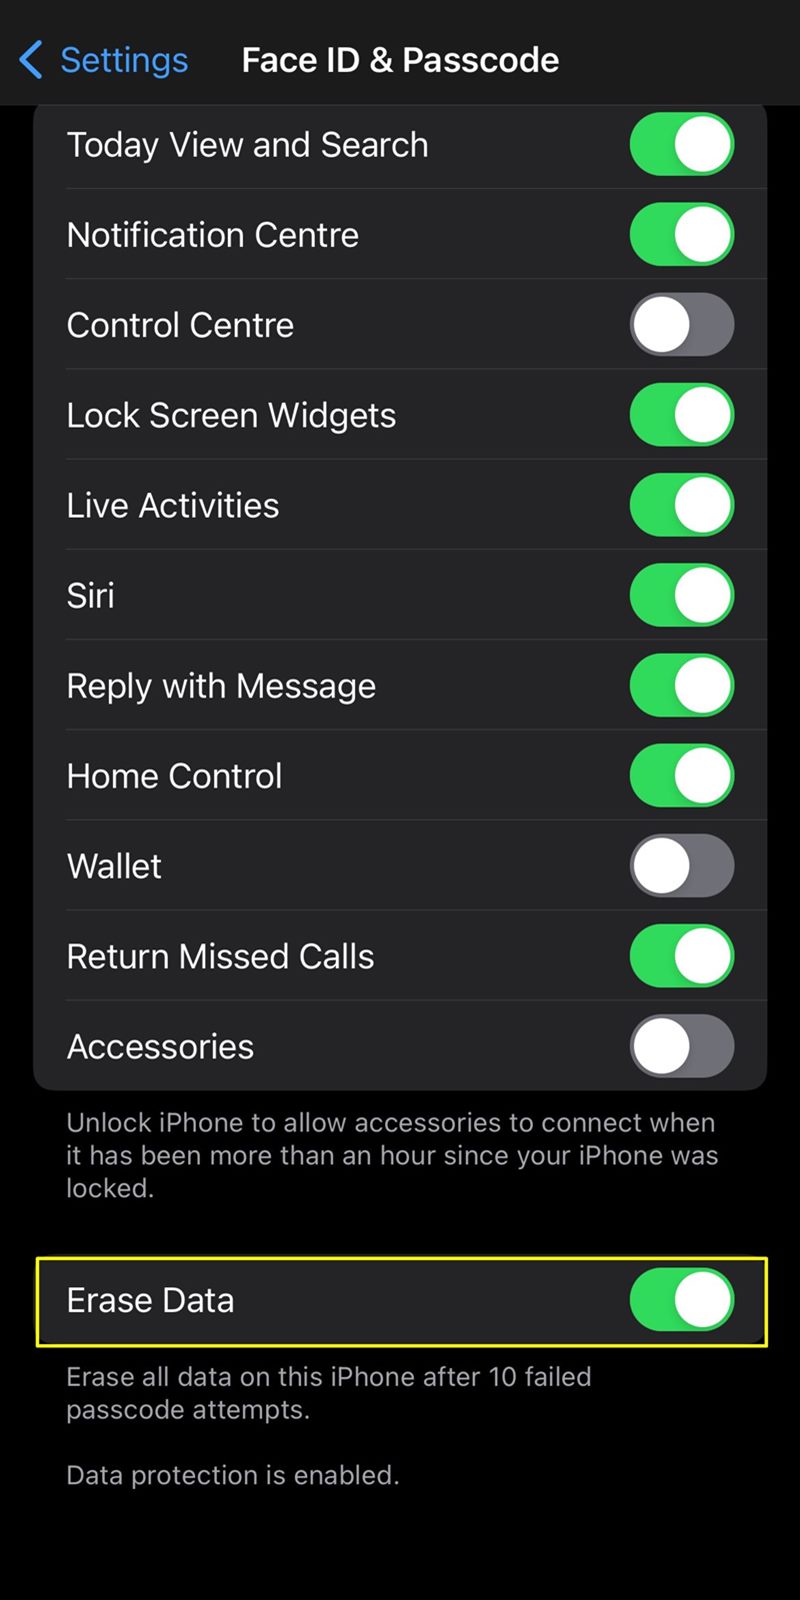 enabling erase data iPhone